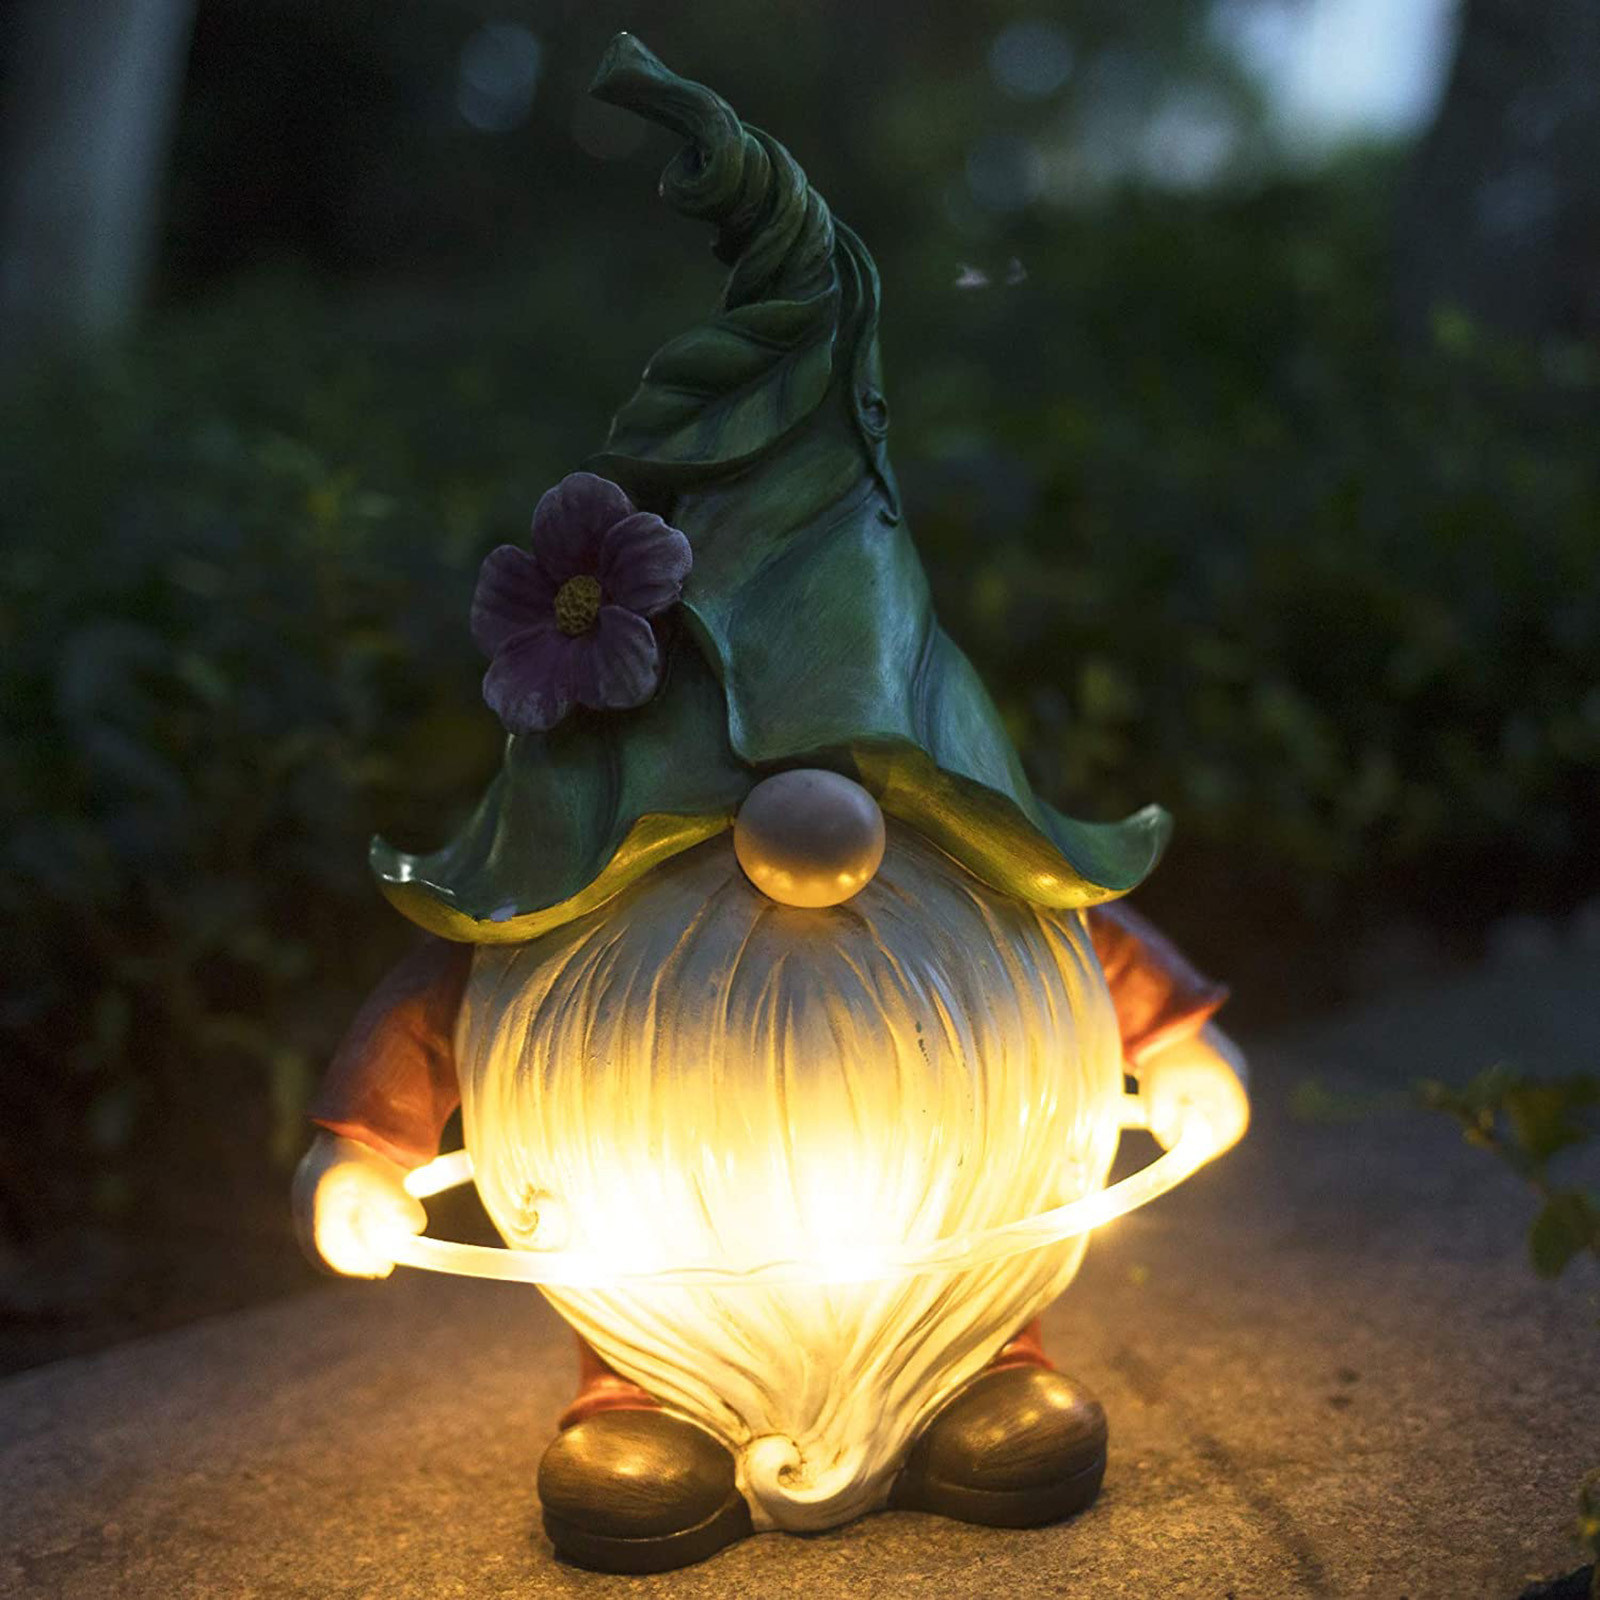  Ornament Gift Resin Garden Figurine Solar LED Lights (ESG17910)